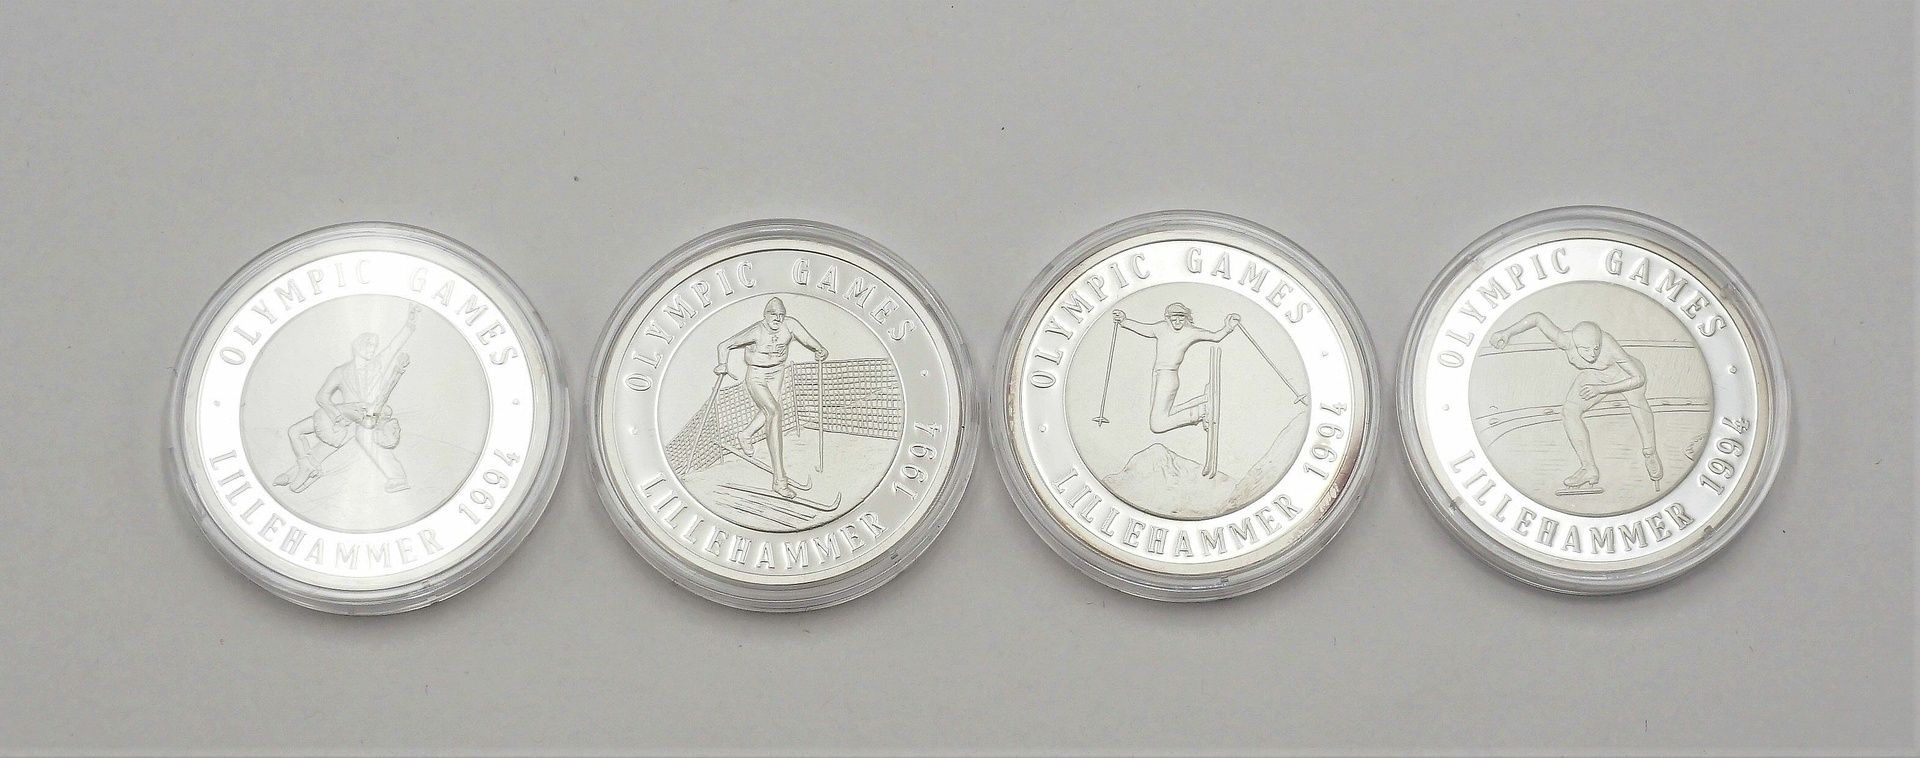 12 Medaillen Olympische Winterspiele Lillehammer 1994 - Bild 4 aus 5